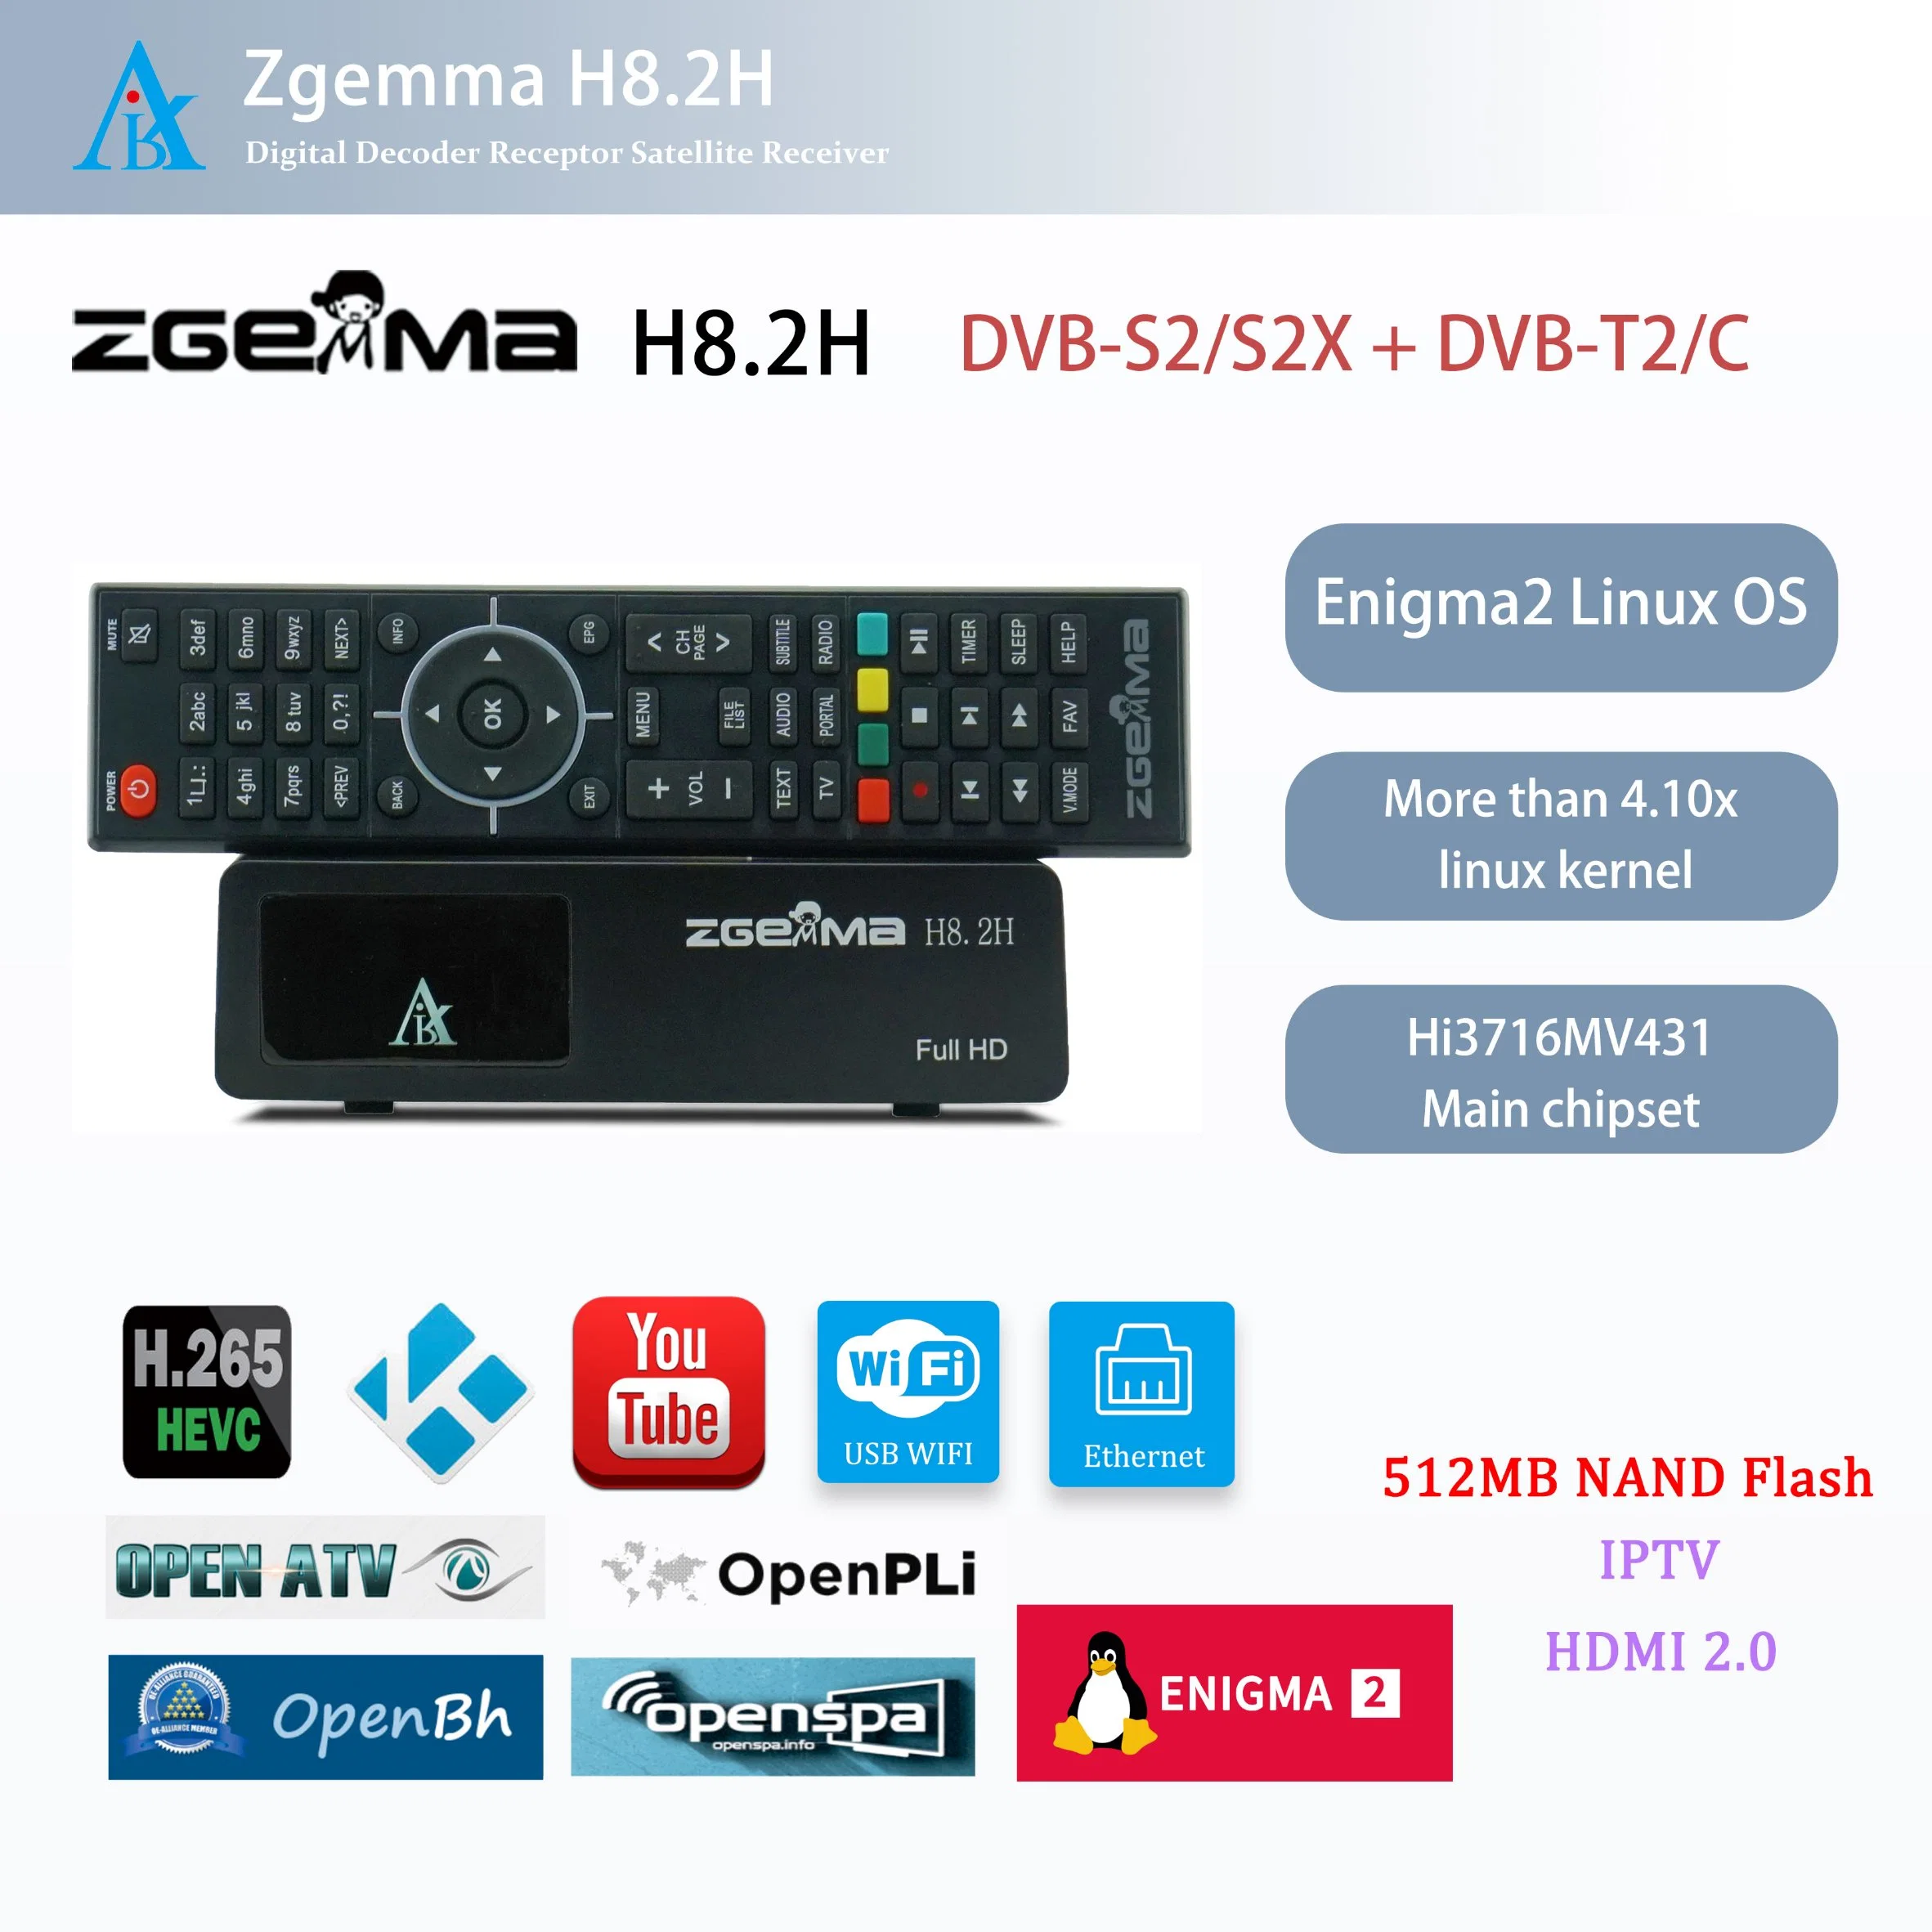 جهاز استقبال تلفزيون مع القنوات الفضائية Zgemma H8.2h - Enigma2 Linux OS، ودقة 1080p، وDVB-S2X + DVB-T2/C Tuner TV Decoder